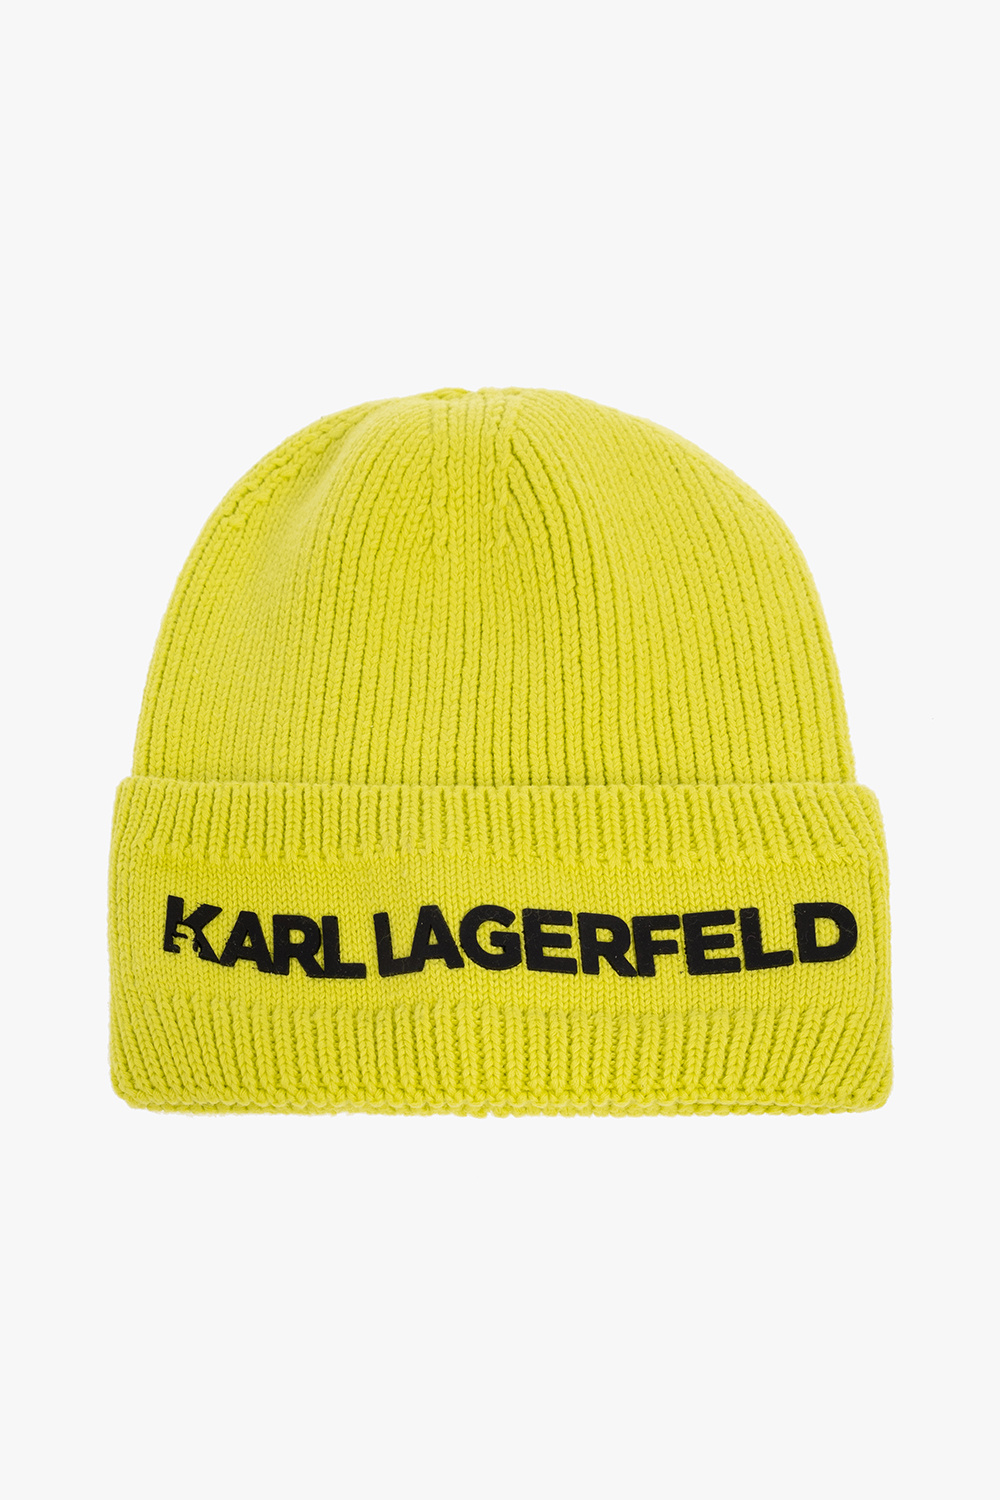 Karl Lagerfeld Kids clothing men storage 45 robes caps mats